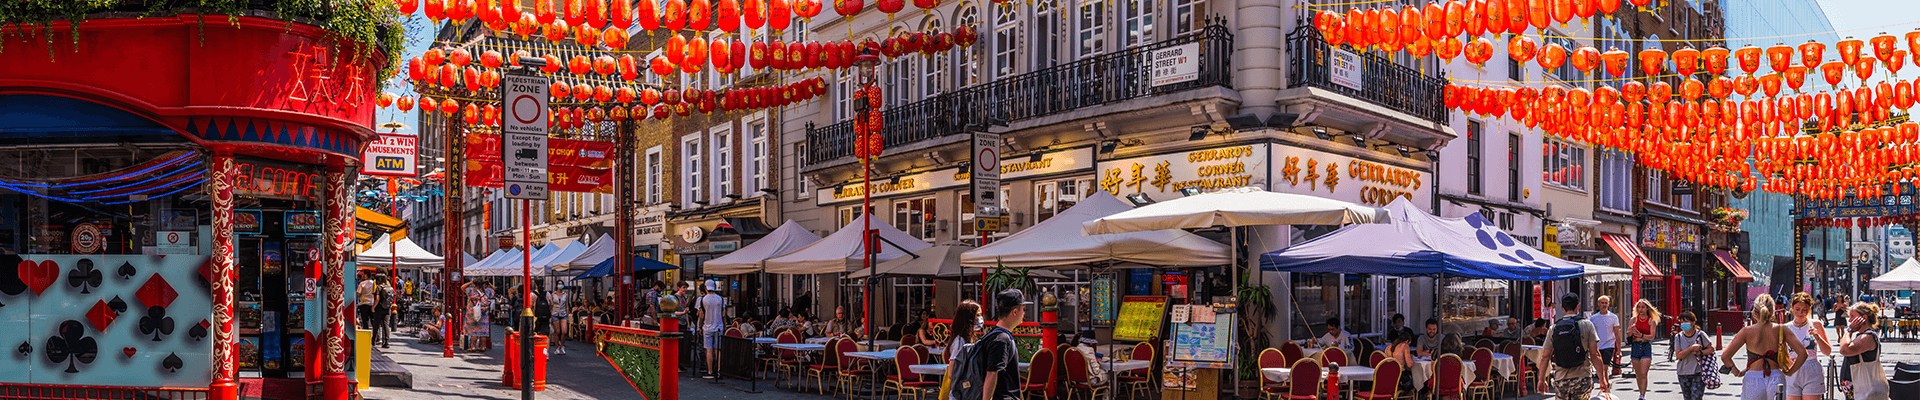 Chinatown in Soho